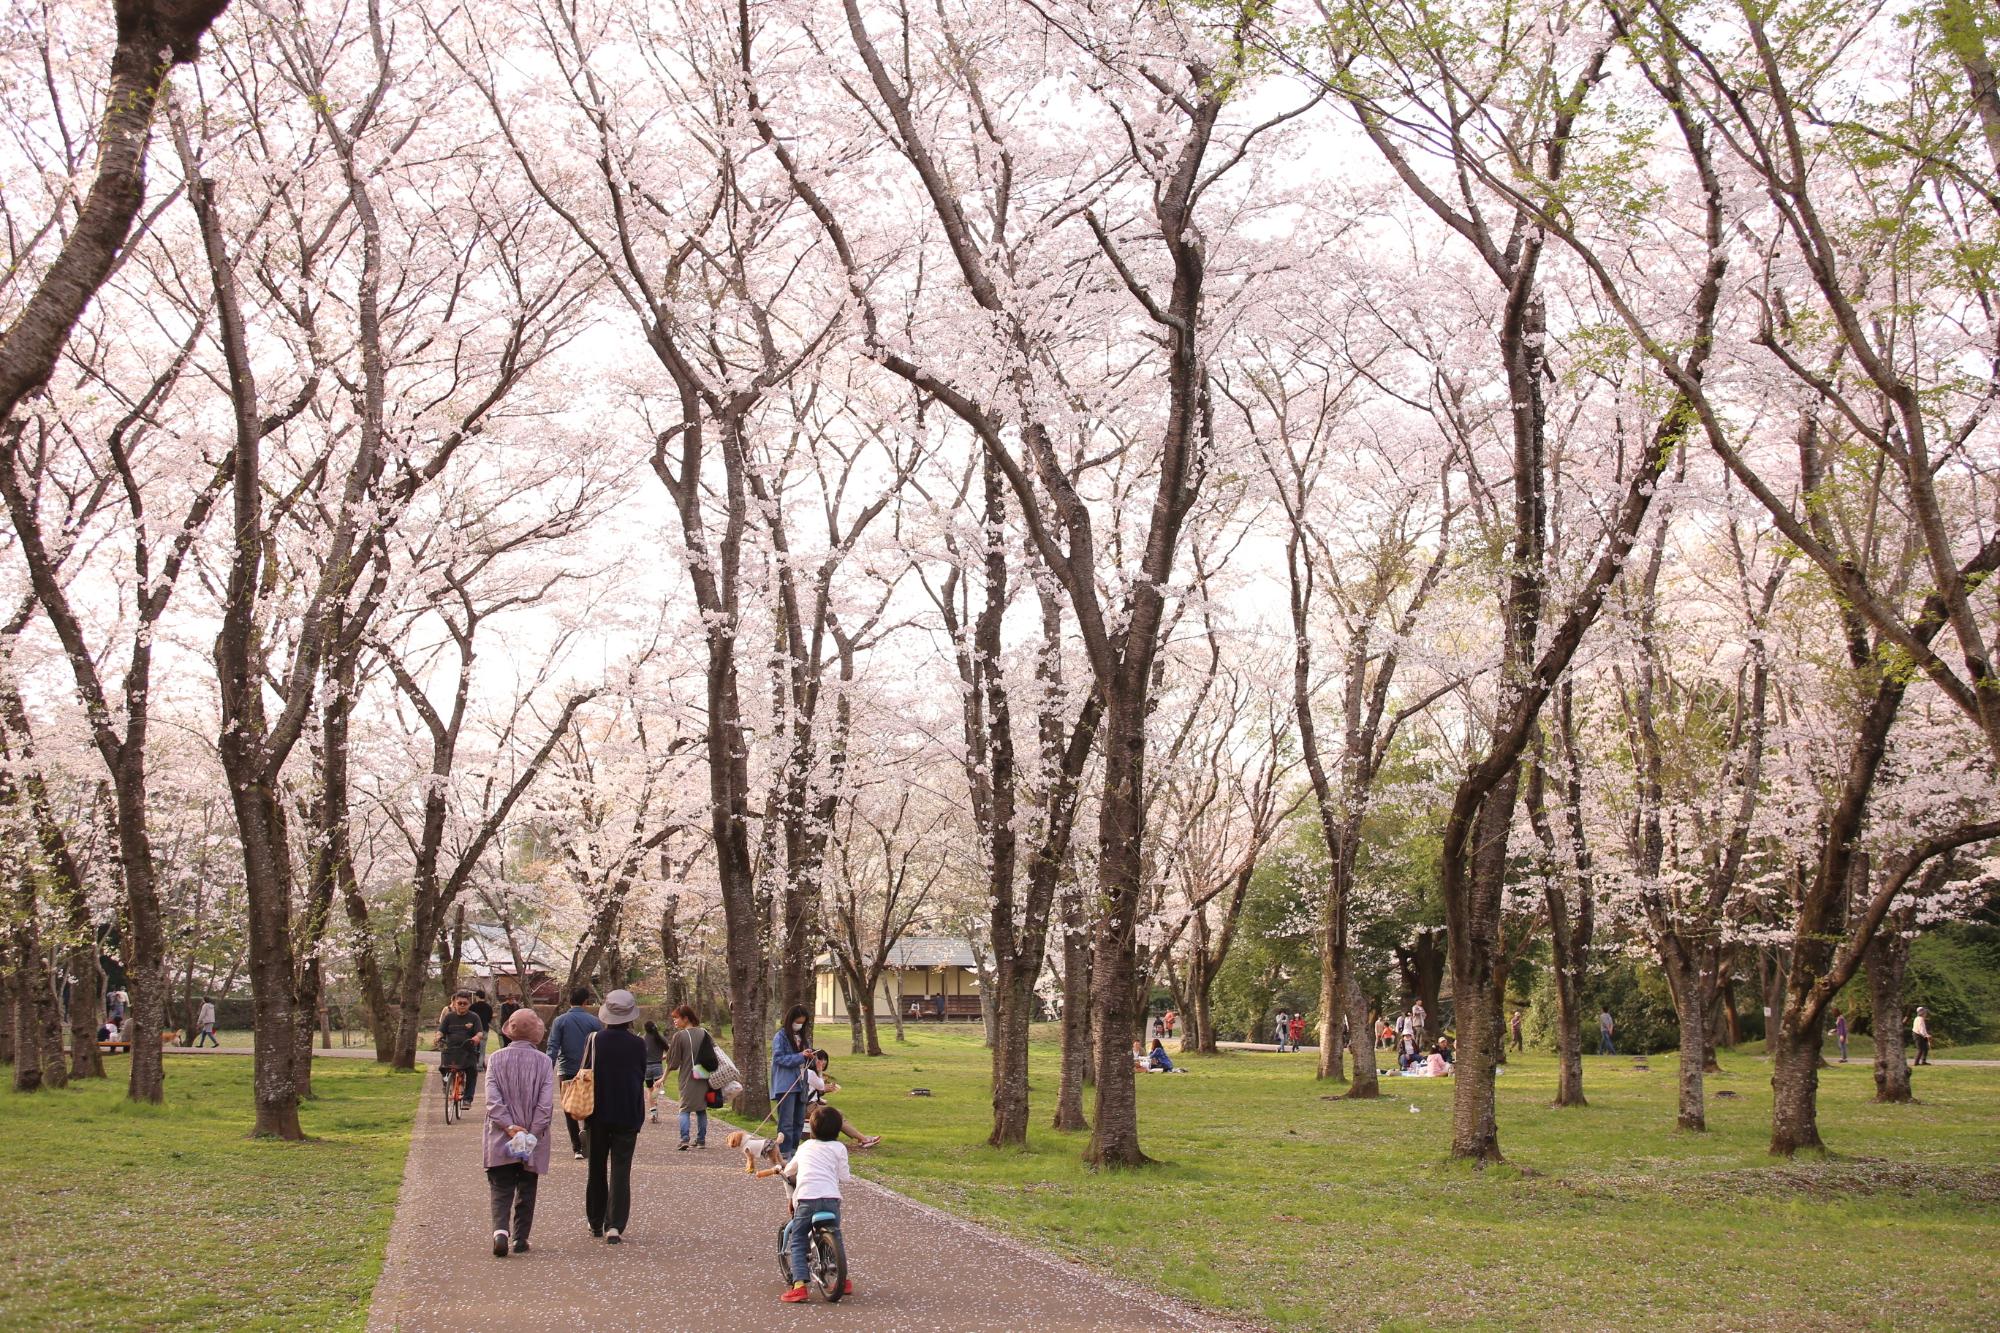 両サイドに沢山の満開の桜が咲いている様子を見に来ている方々の写真